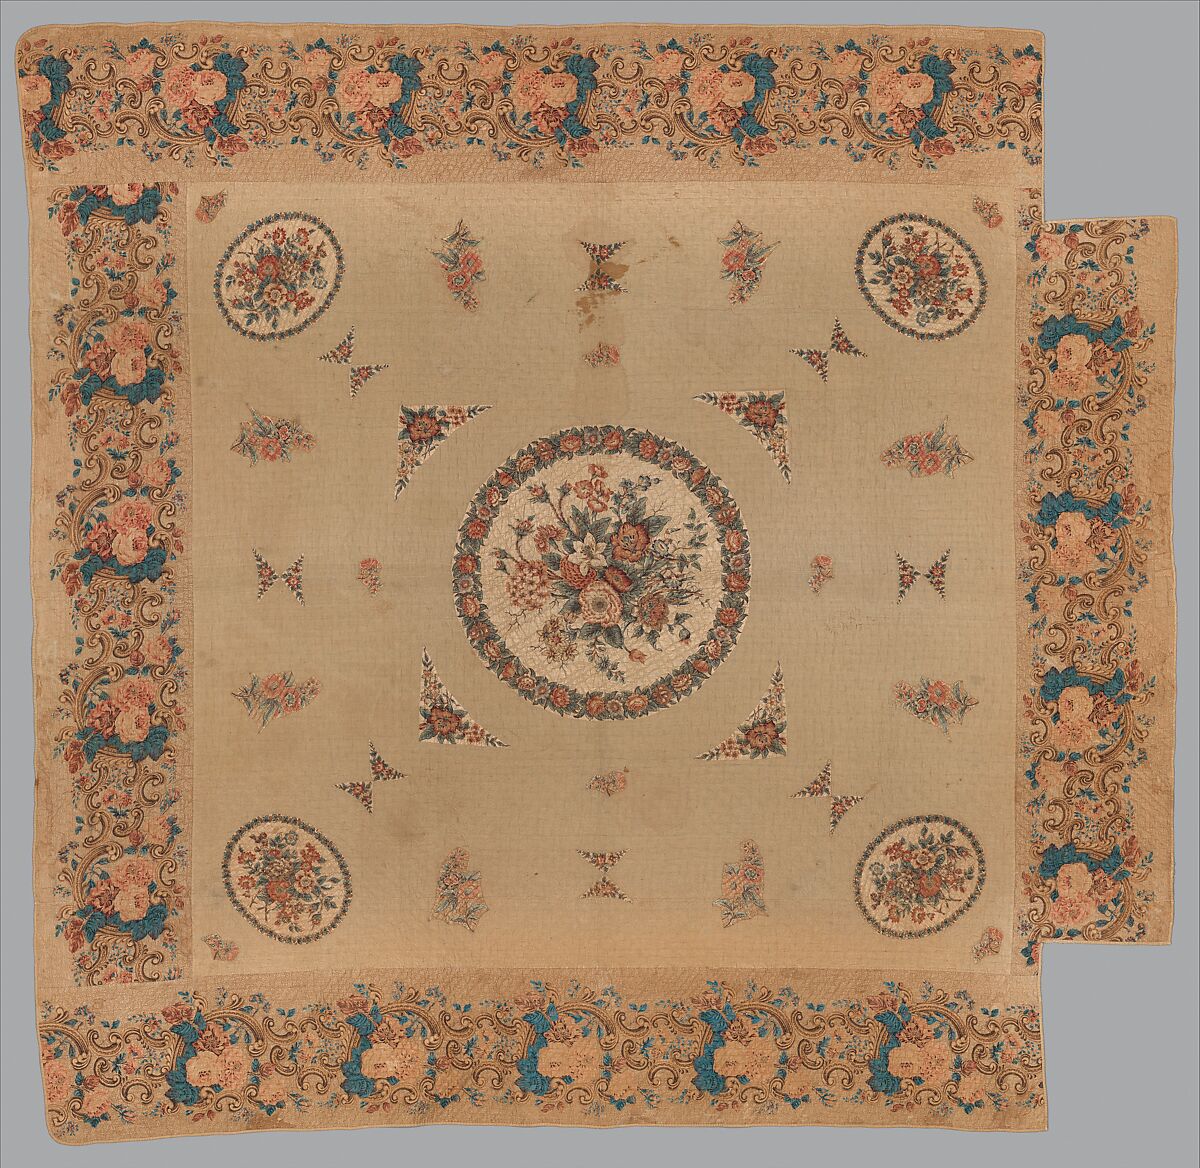 Chintz appliquéd quilt, Cotton and linen, American 